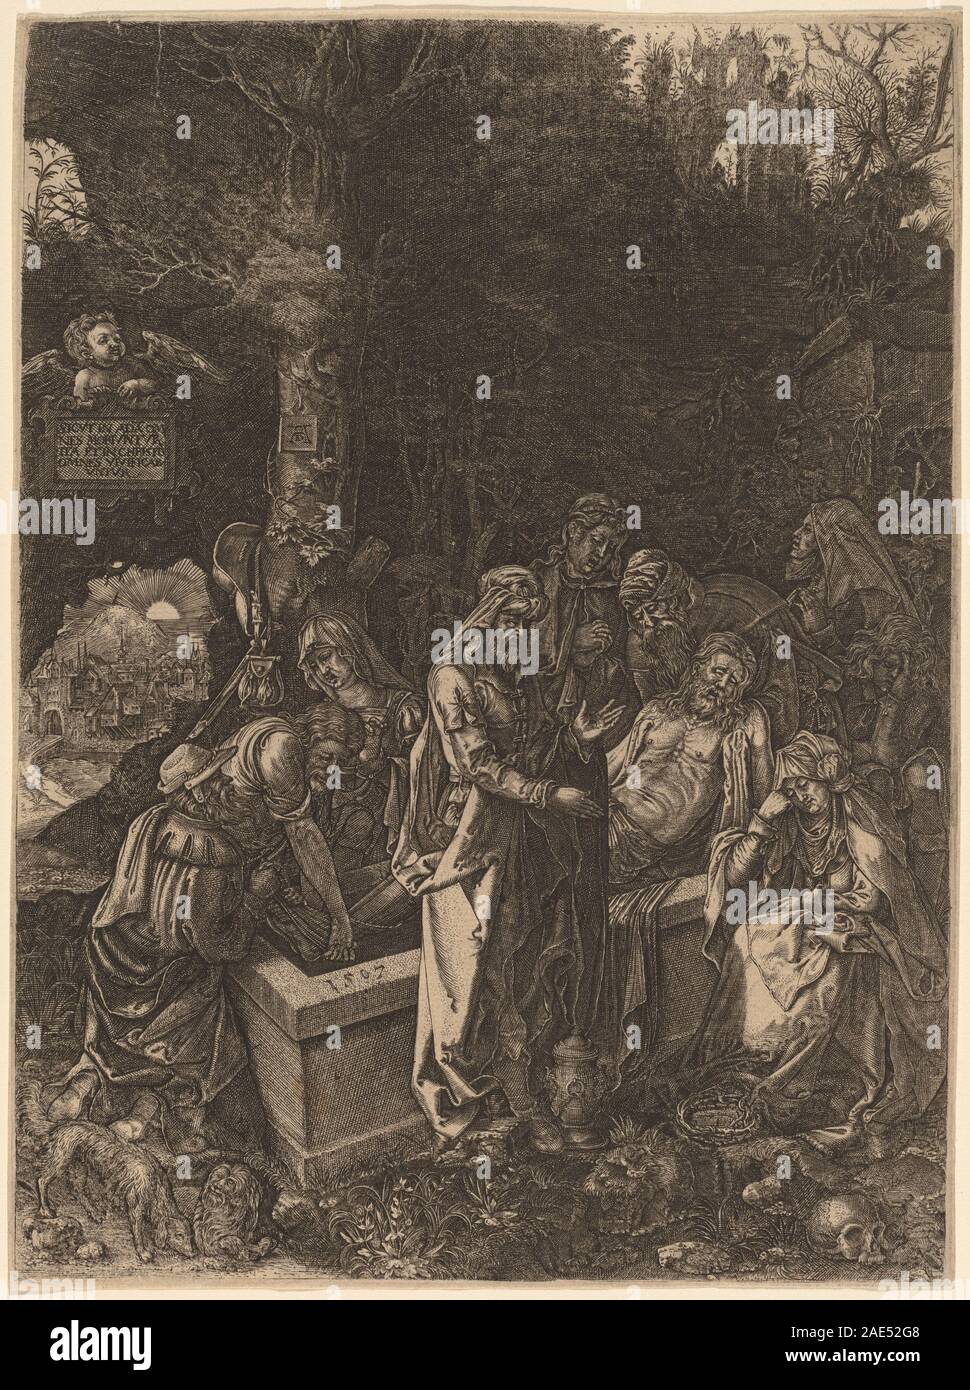 La mise au tombeau ; début du 17e siècle 17e siècle de style flamand, d'Albrecht Dürer, la mise au tombeau, début du 17e siècle Banque D'Images